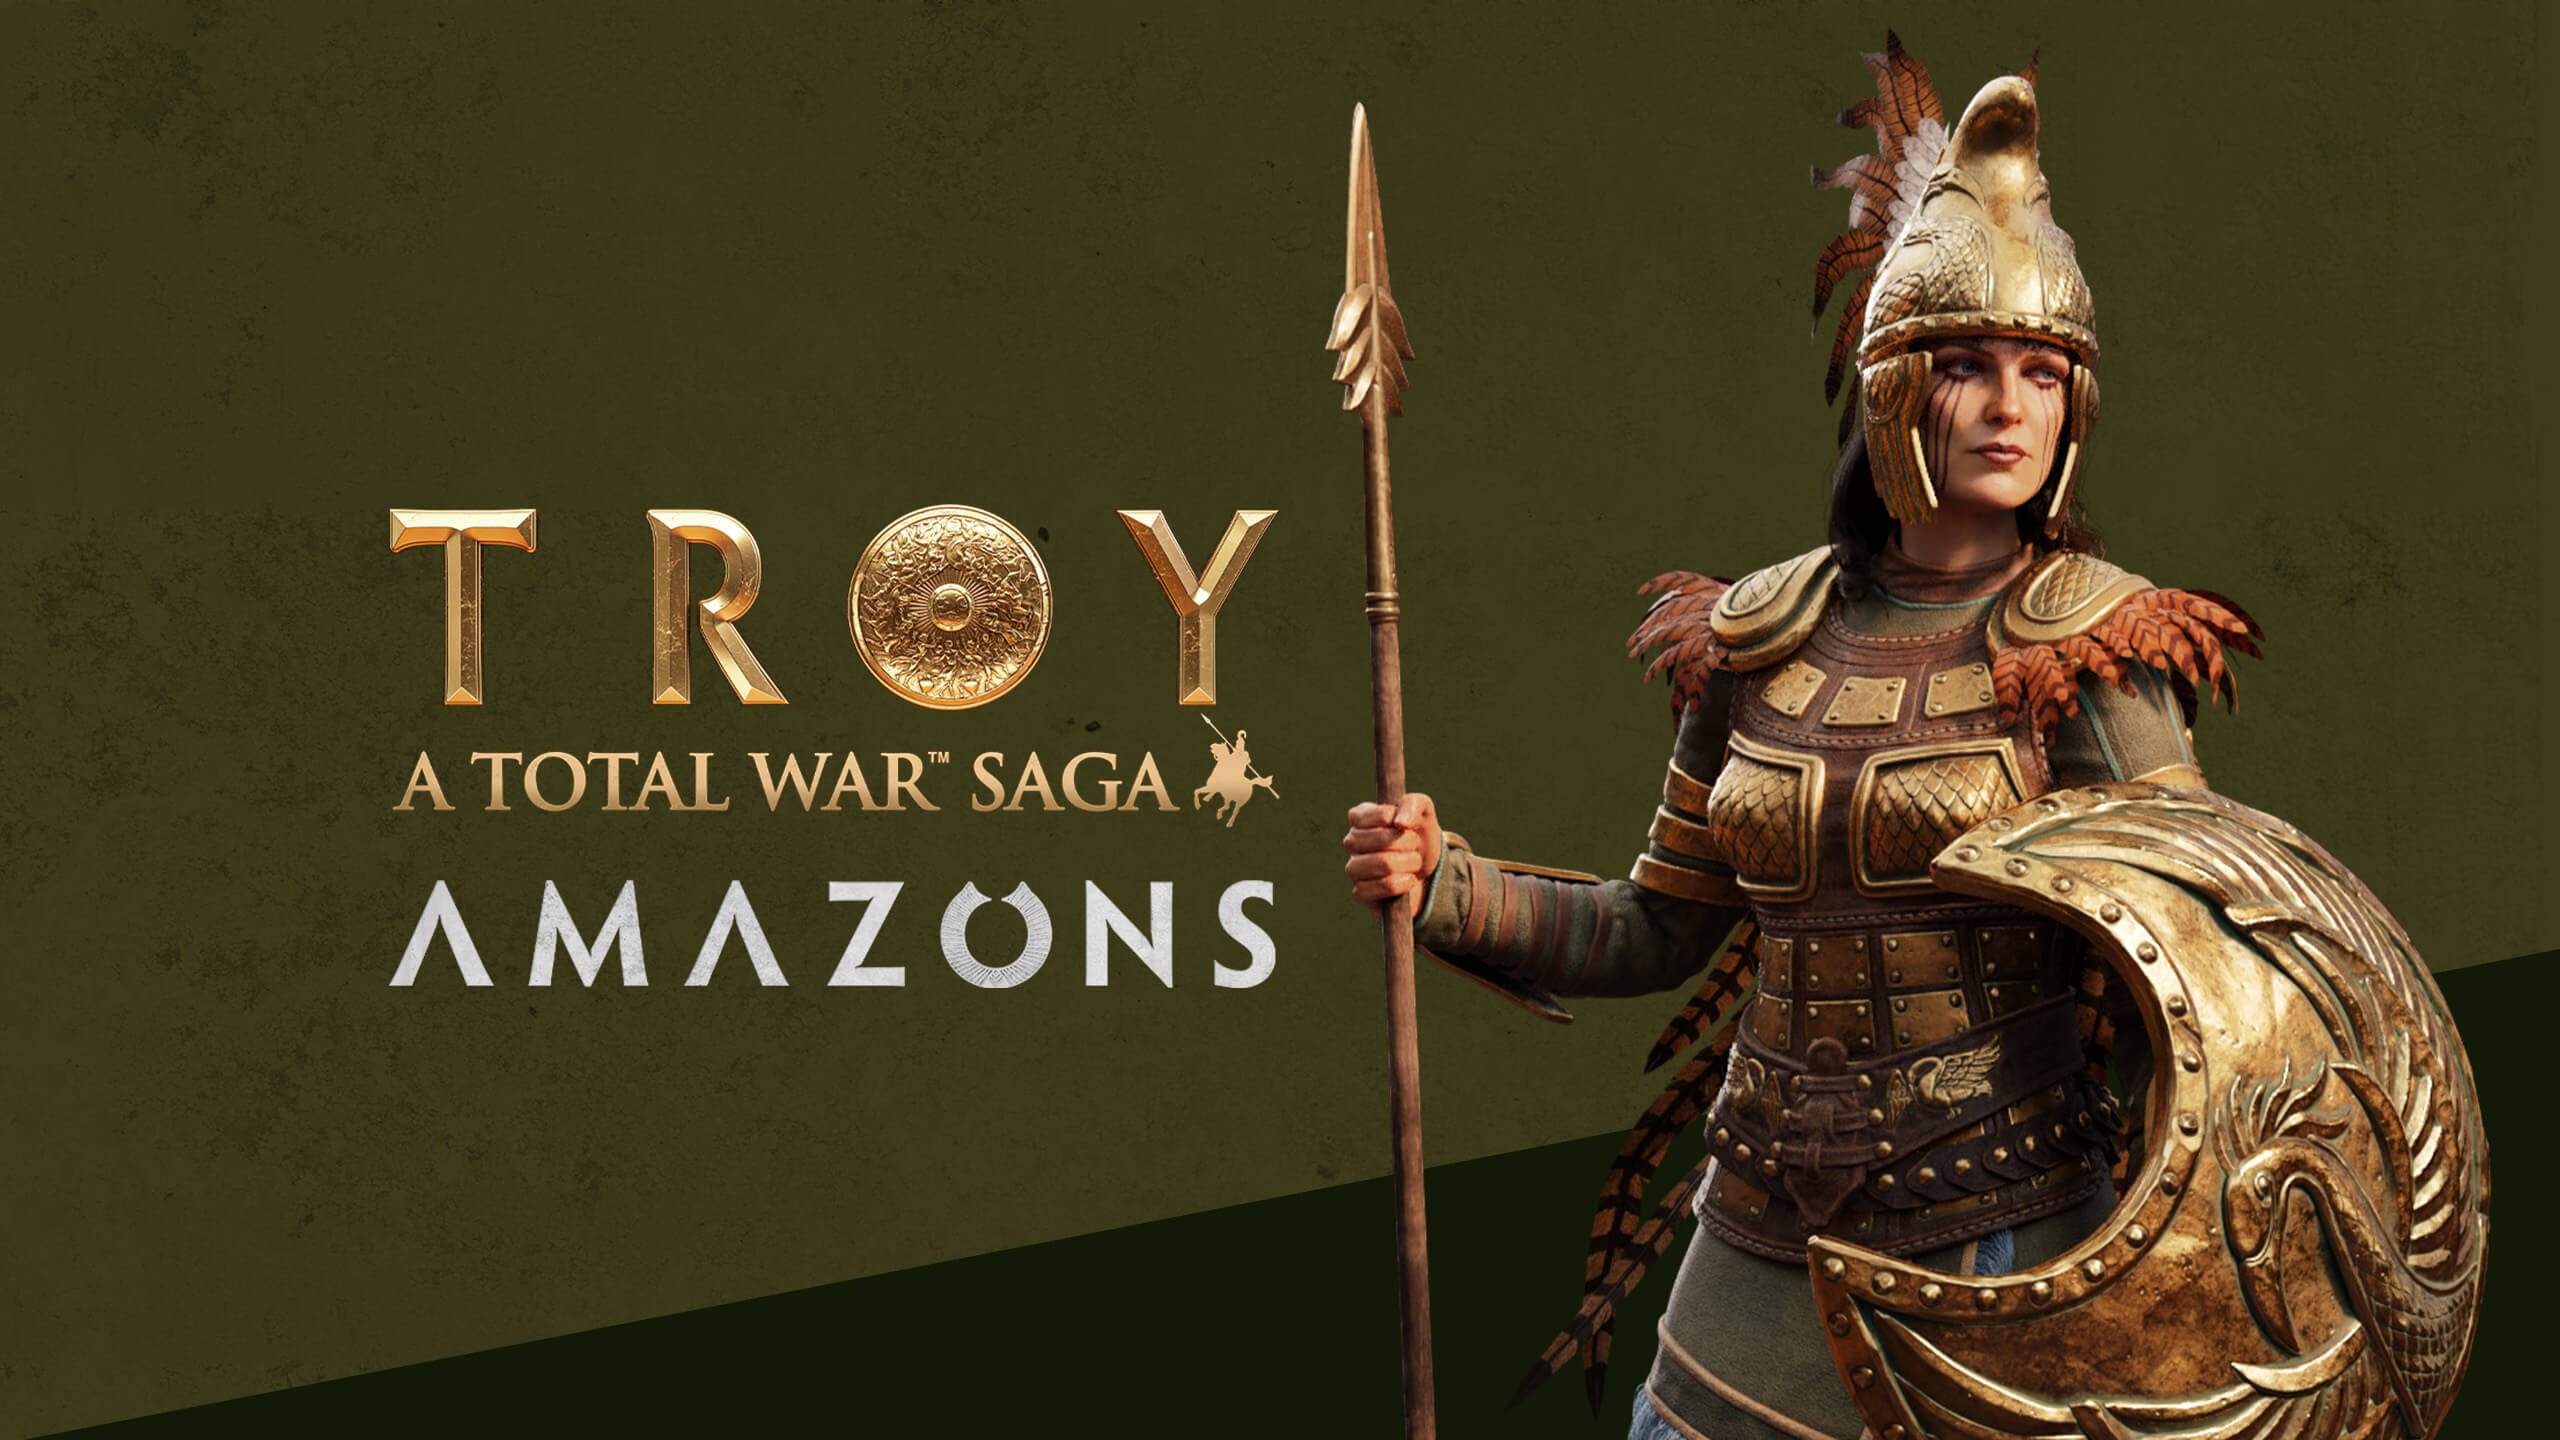 Total War Saga Troy Wallpapers